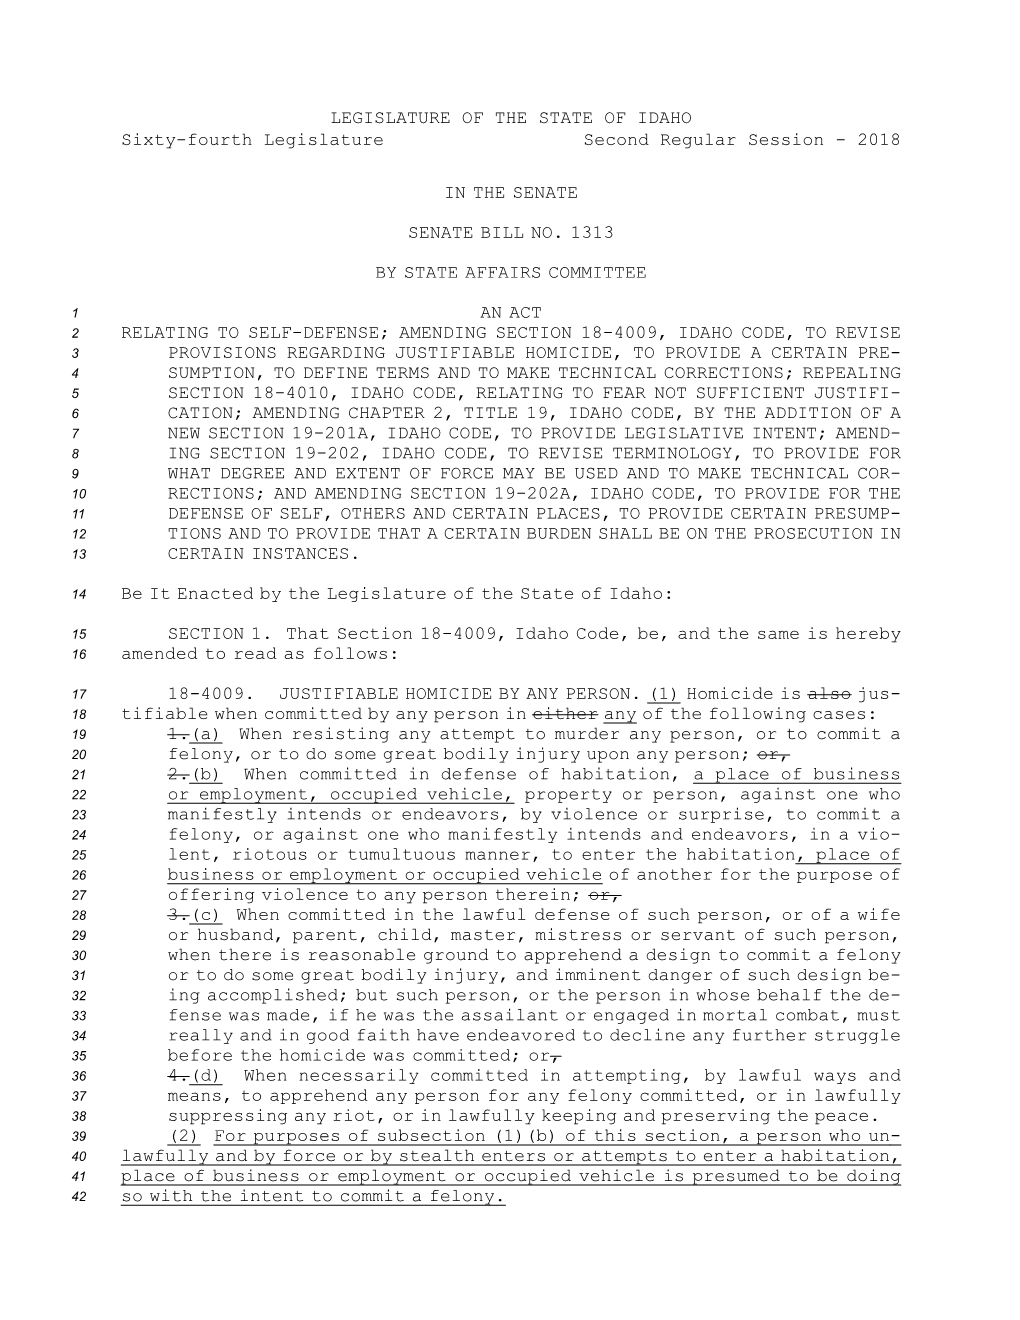 Senate Bill No.1313 (2018)